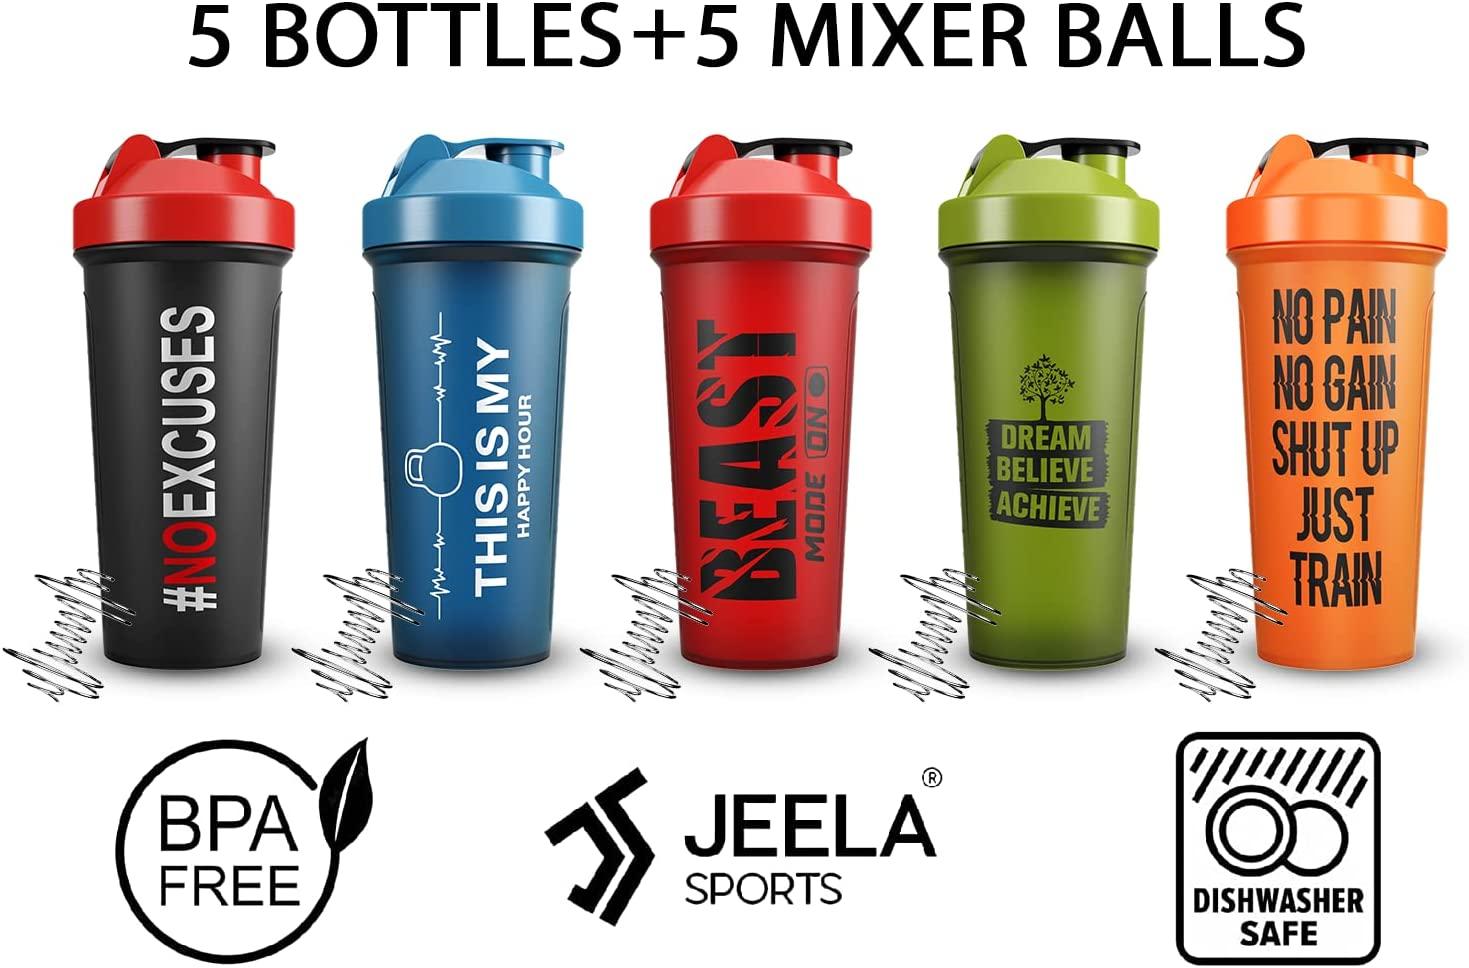 JEELA SPORTS Protein Shaker Bottles 5 Pack - 24 Oz